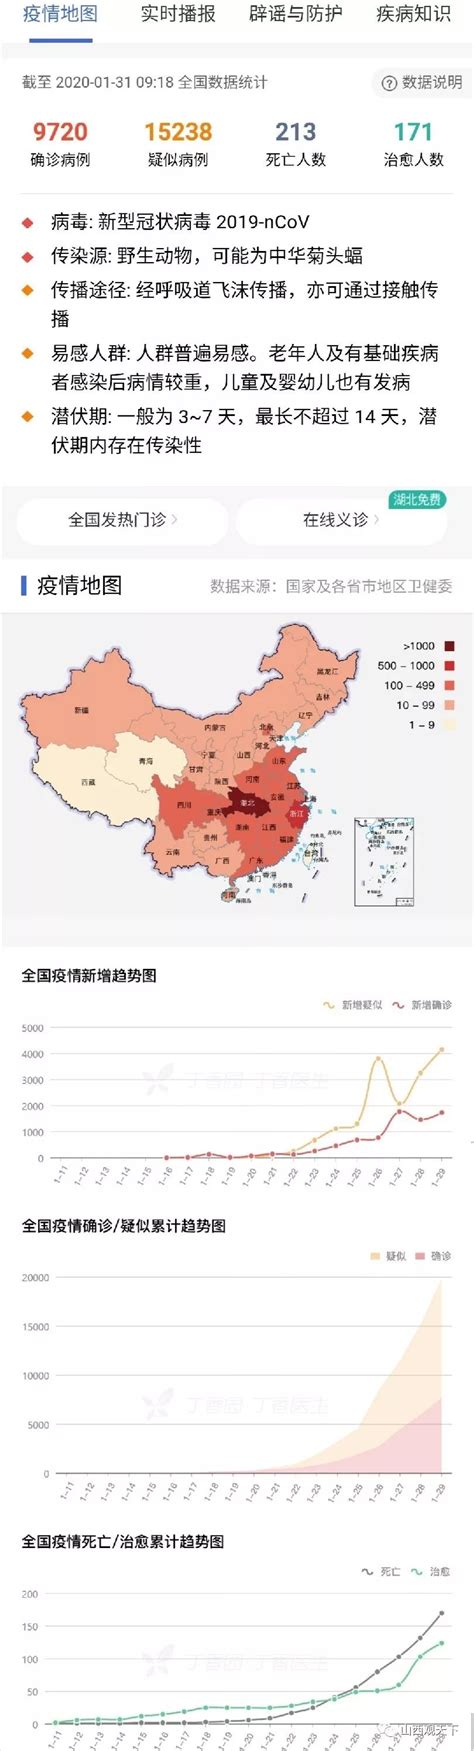 2月7日新型冠状肺炎疫情动态（含湖南各地，2月7日8:00）|社会资讯|新闻|湖南人在上海